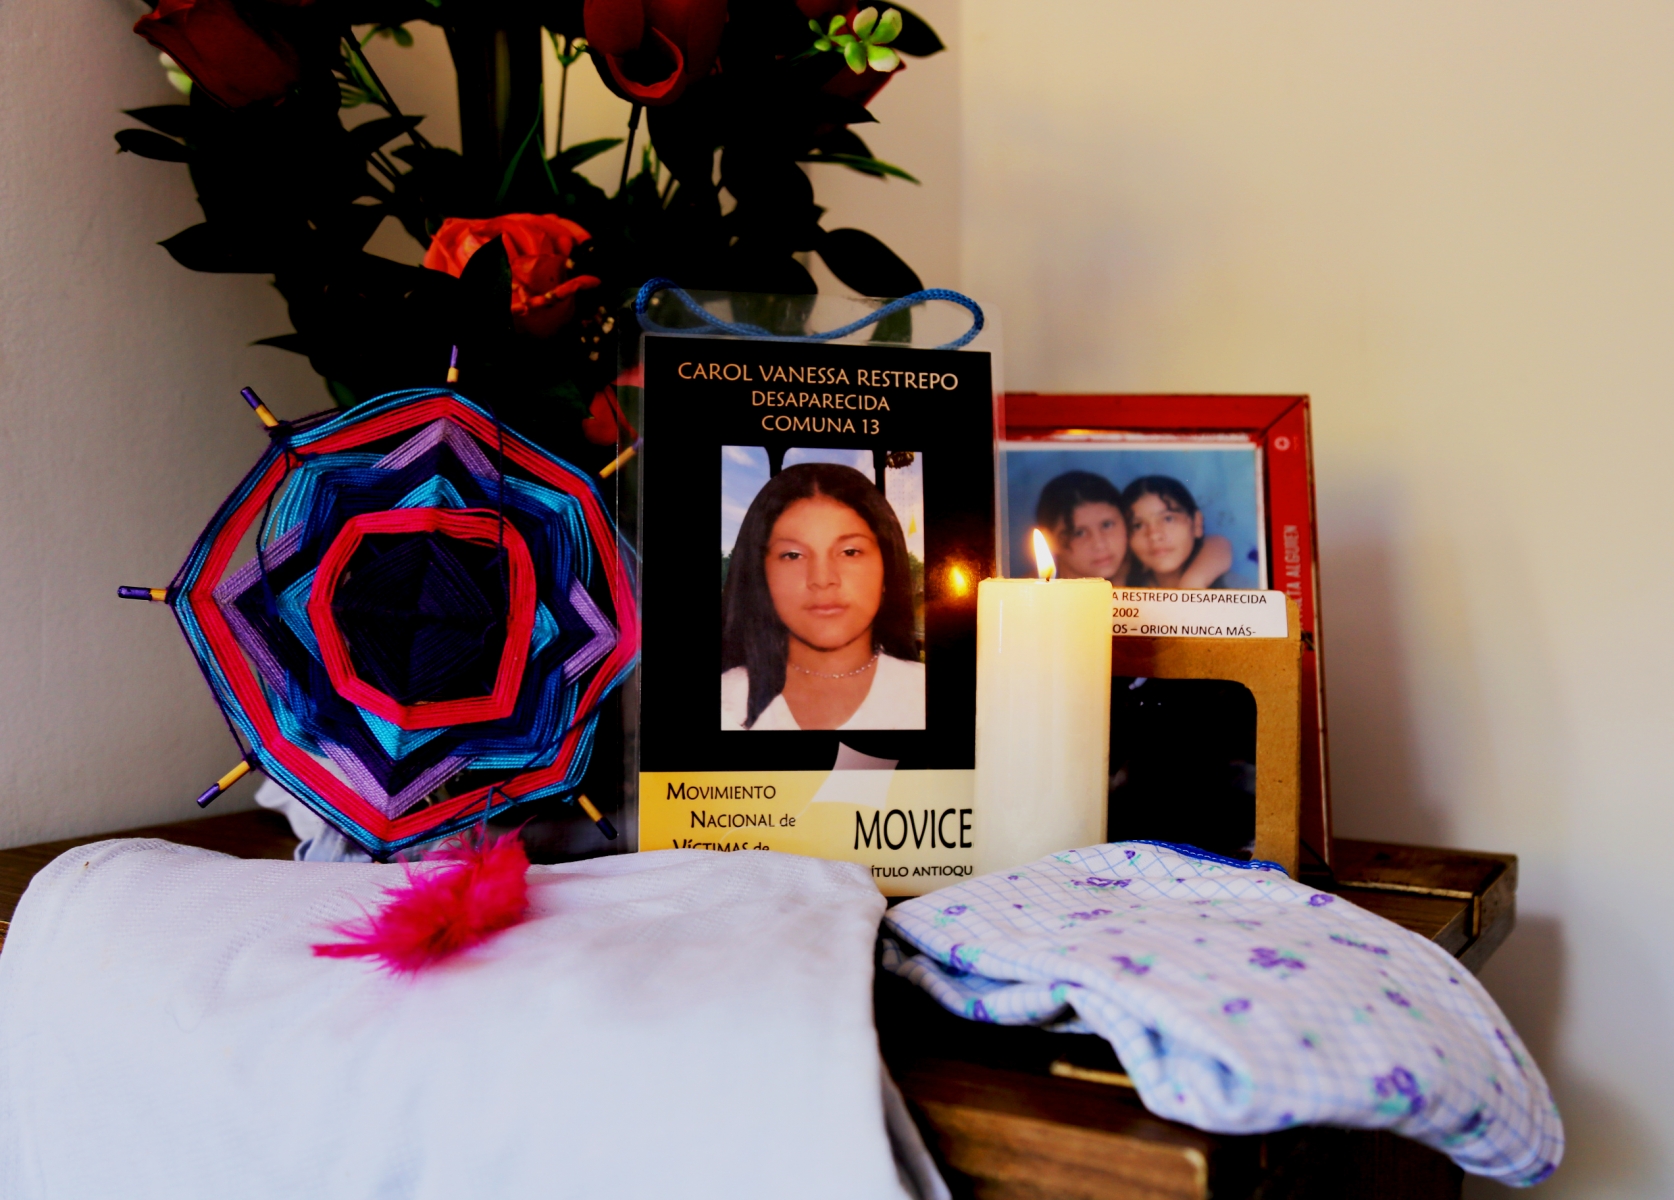 Carol Vanesa Restrepo: Desaparecida el 25 de Octubre de 2002 en la Comuna 13 de Medellín.